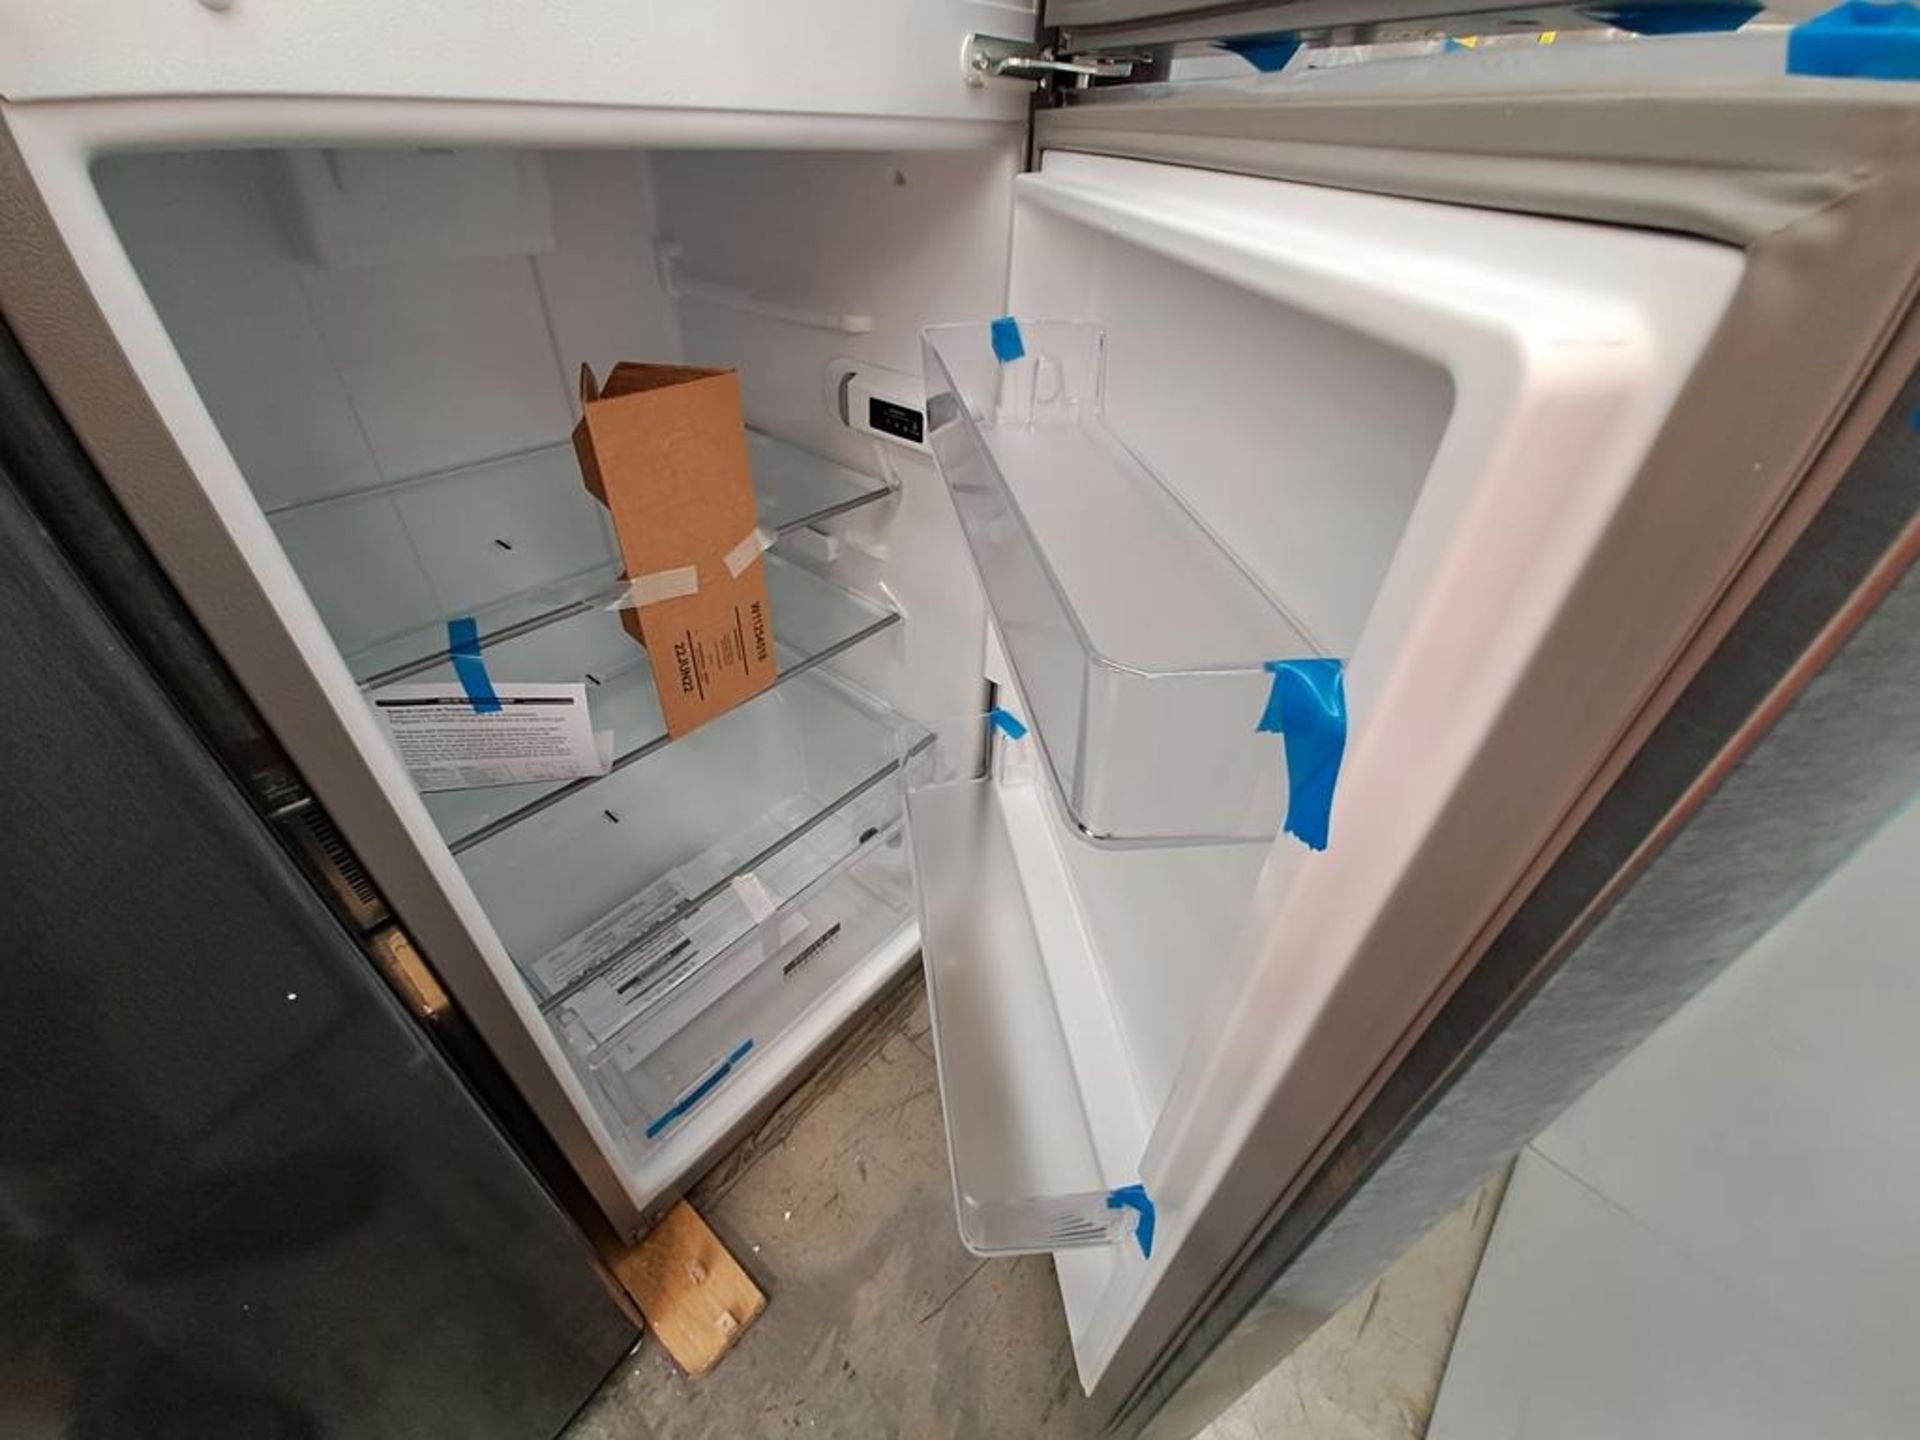 (Equipo nuevo) Lote de 2 refrigeradores contiene: 1 refrigerador Marca WHIRLPOOL, Modelo WT1231D, S - Image 6 of 9